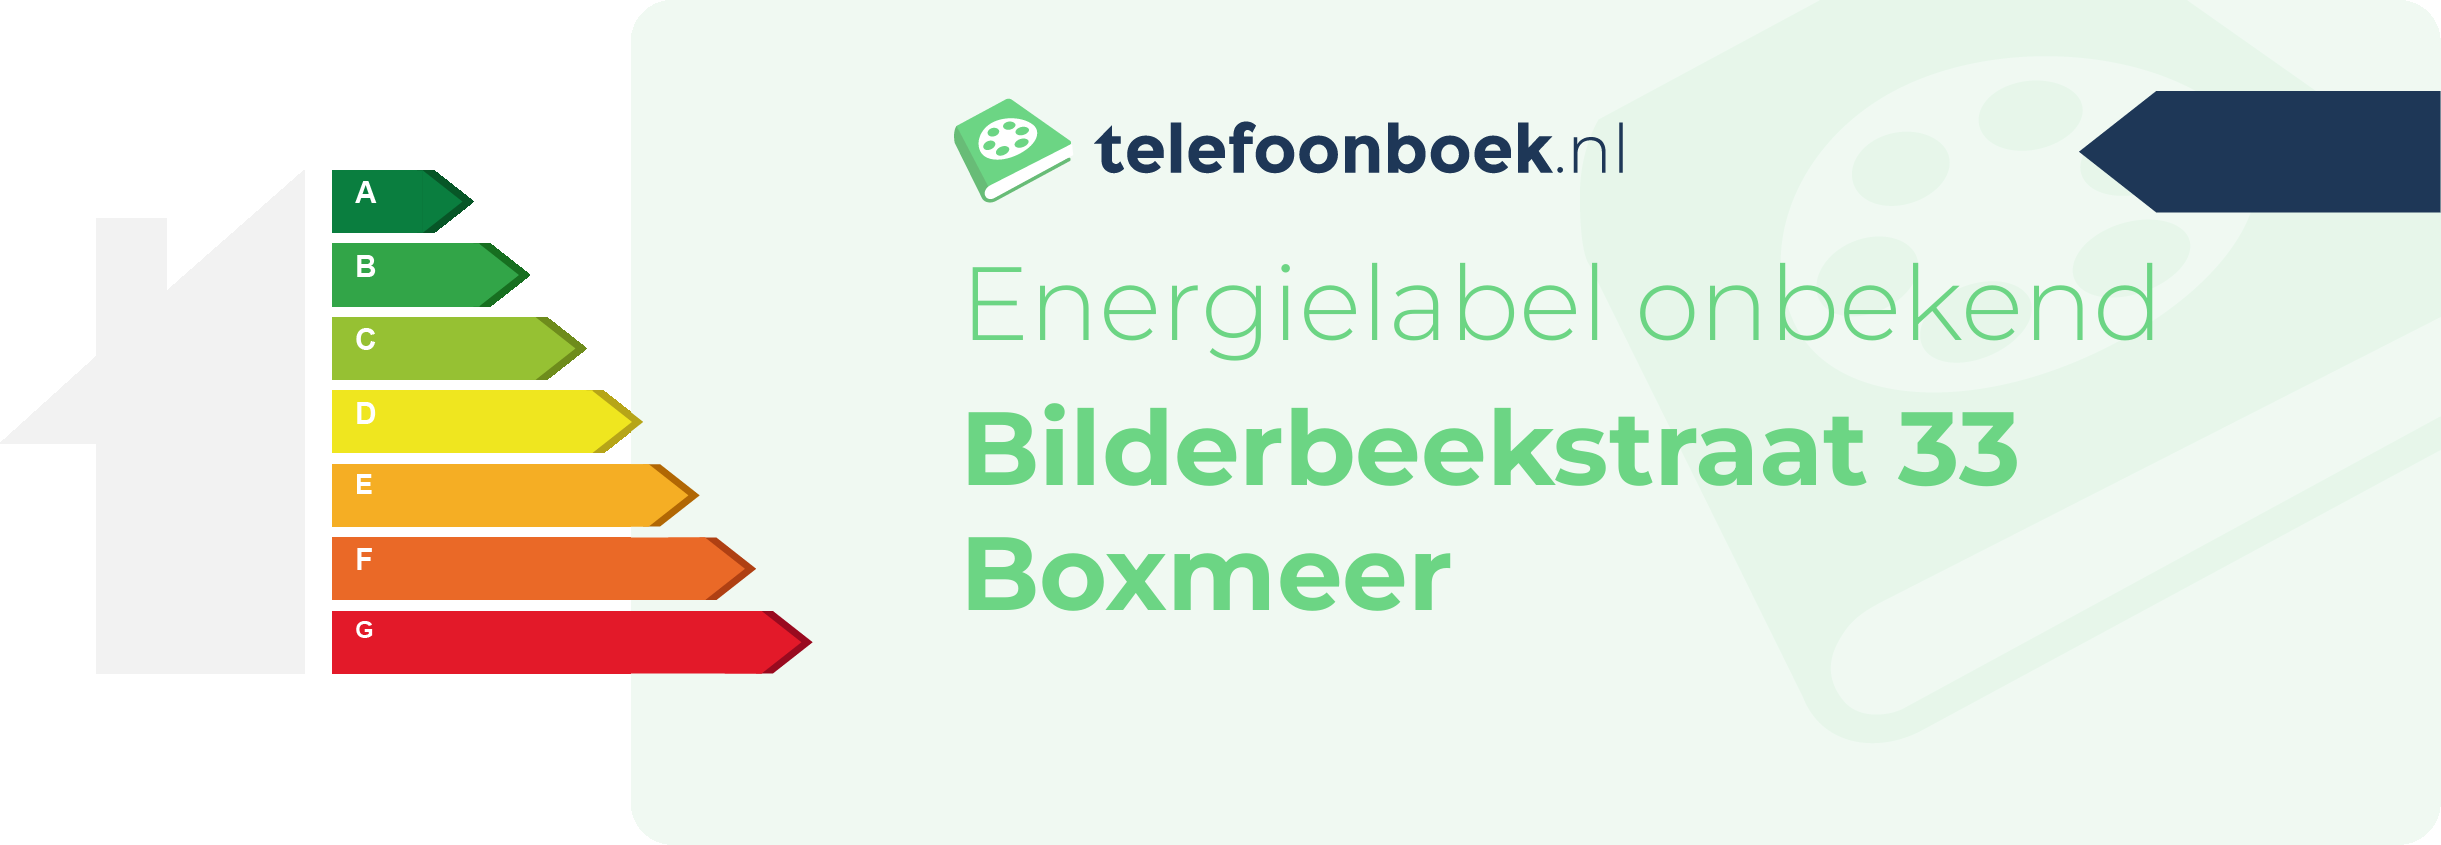 Energielabel Bilderbeekstraat 33 Boxmeer